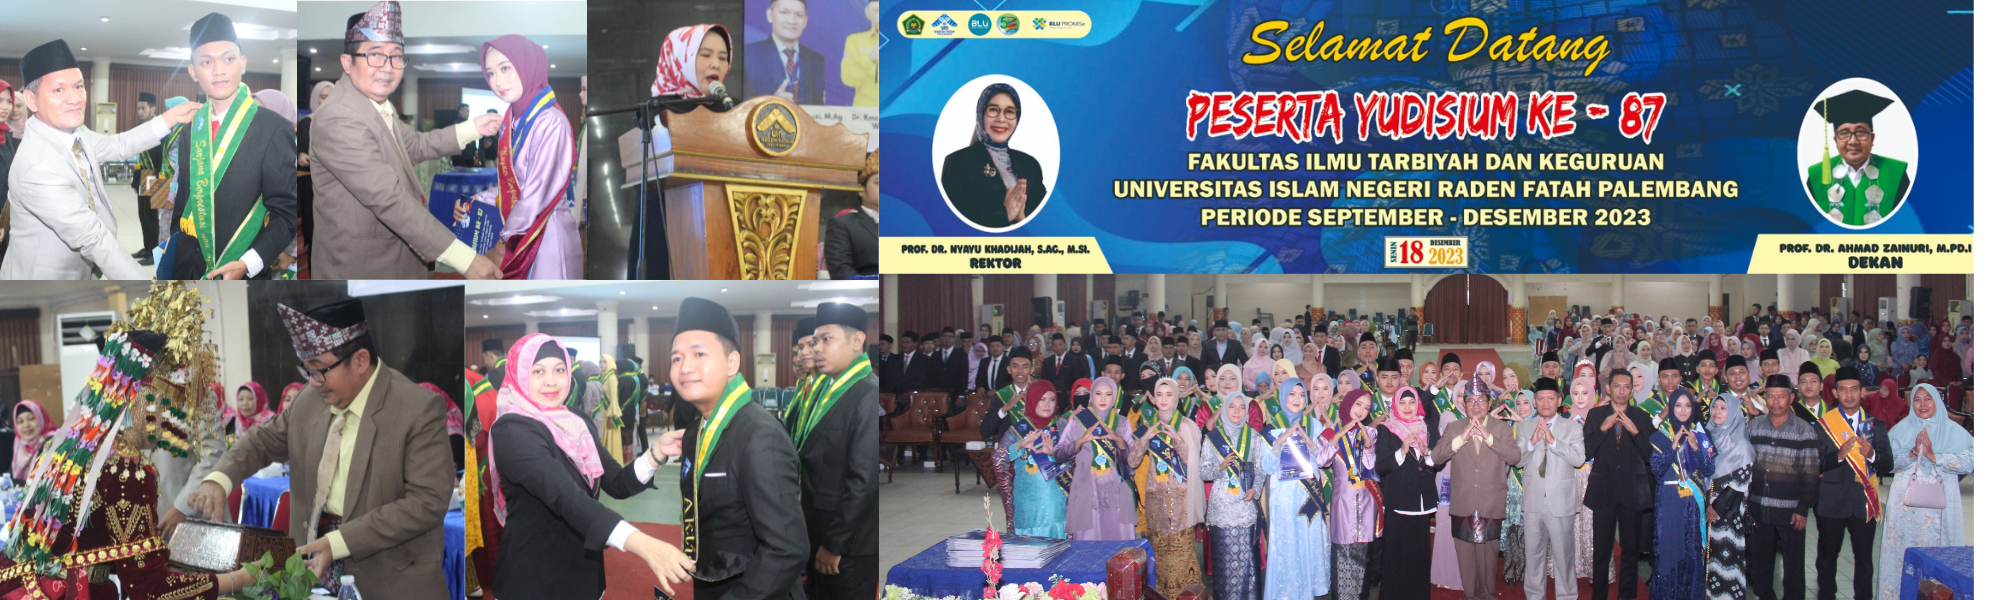 Yudisium ke-87 Fakultas Ilmu Tarbiyah dan Keguruan UIN Raden Fatah Palembang